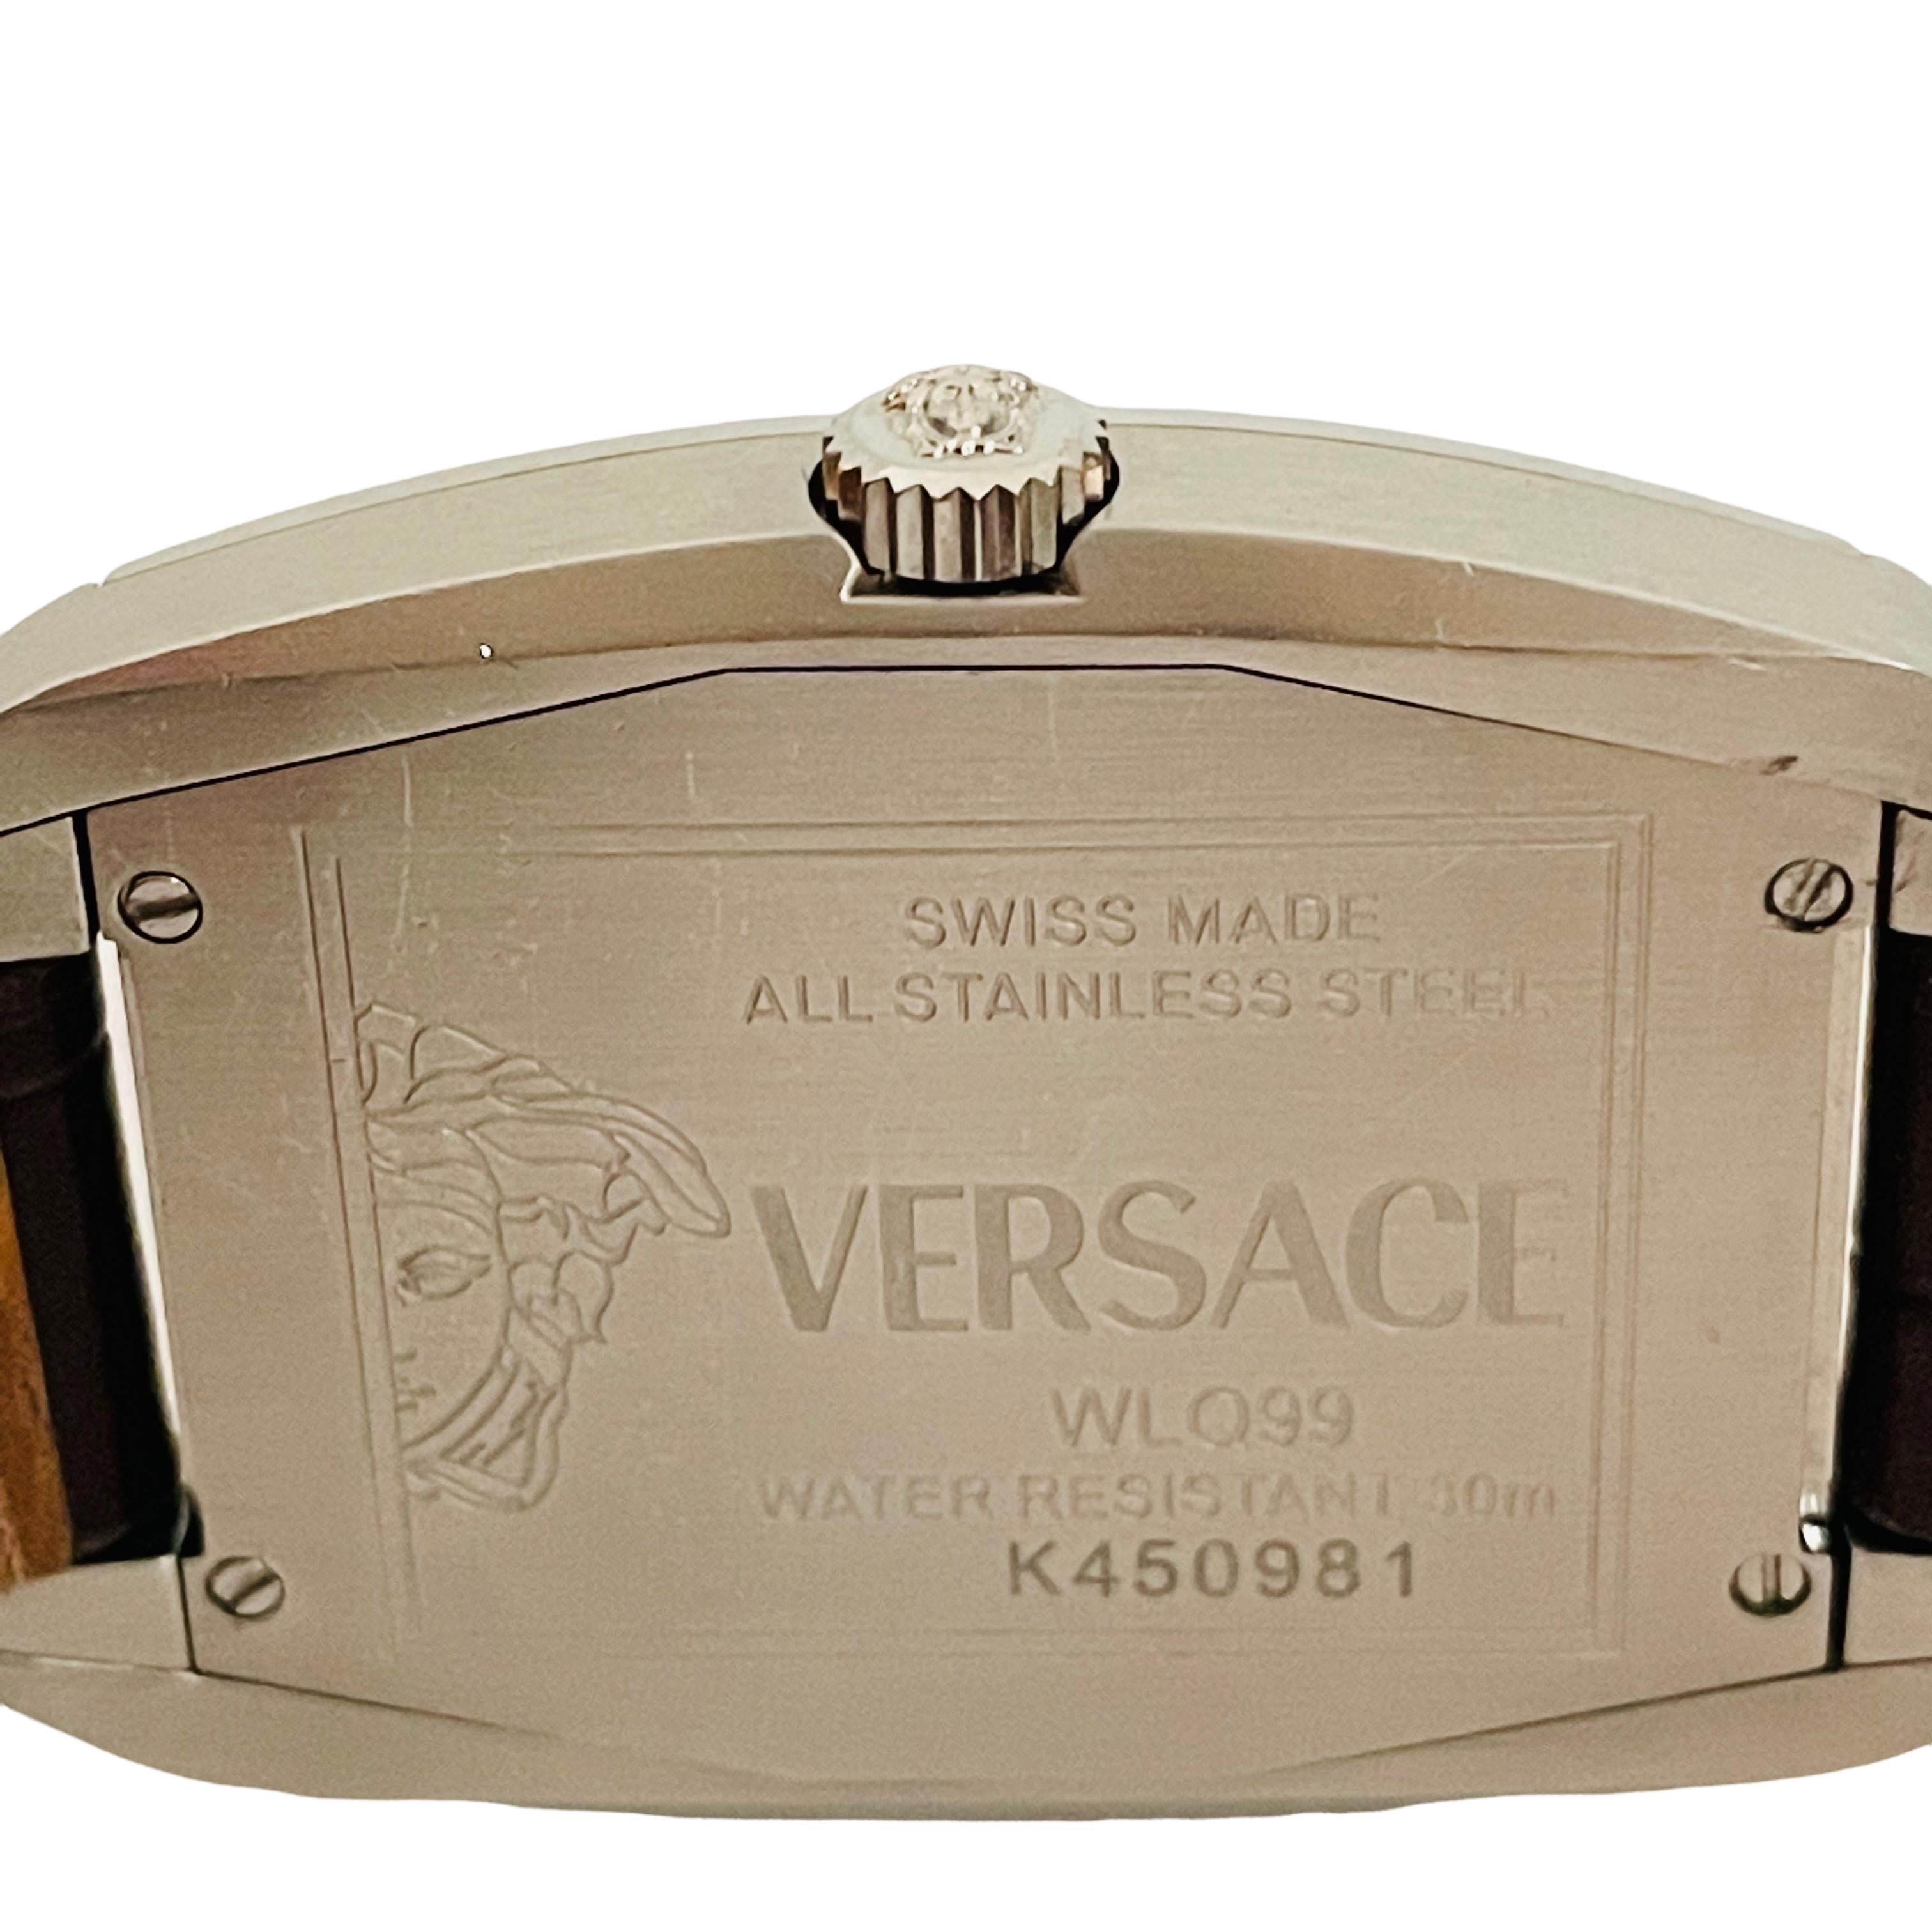 Vintage Versace Tonneau Automatic Men's Watch WLA99 1 3/8in Blue & Black Face 1